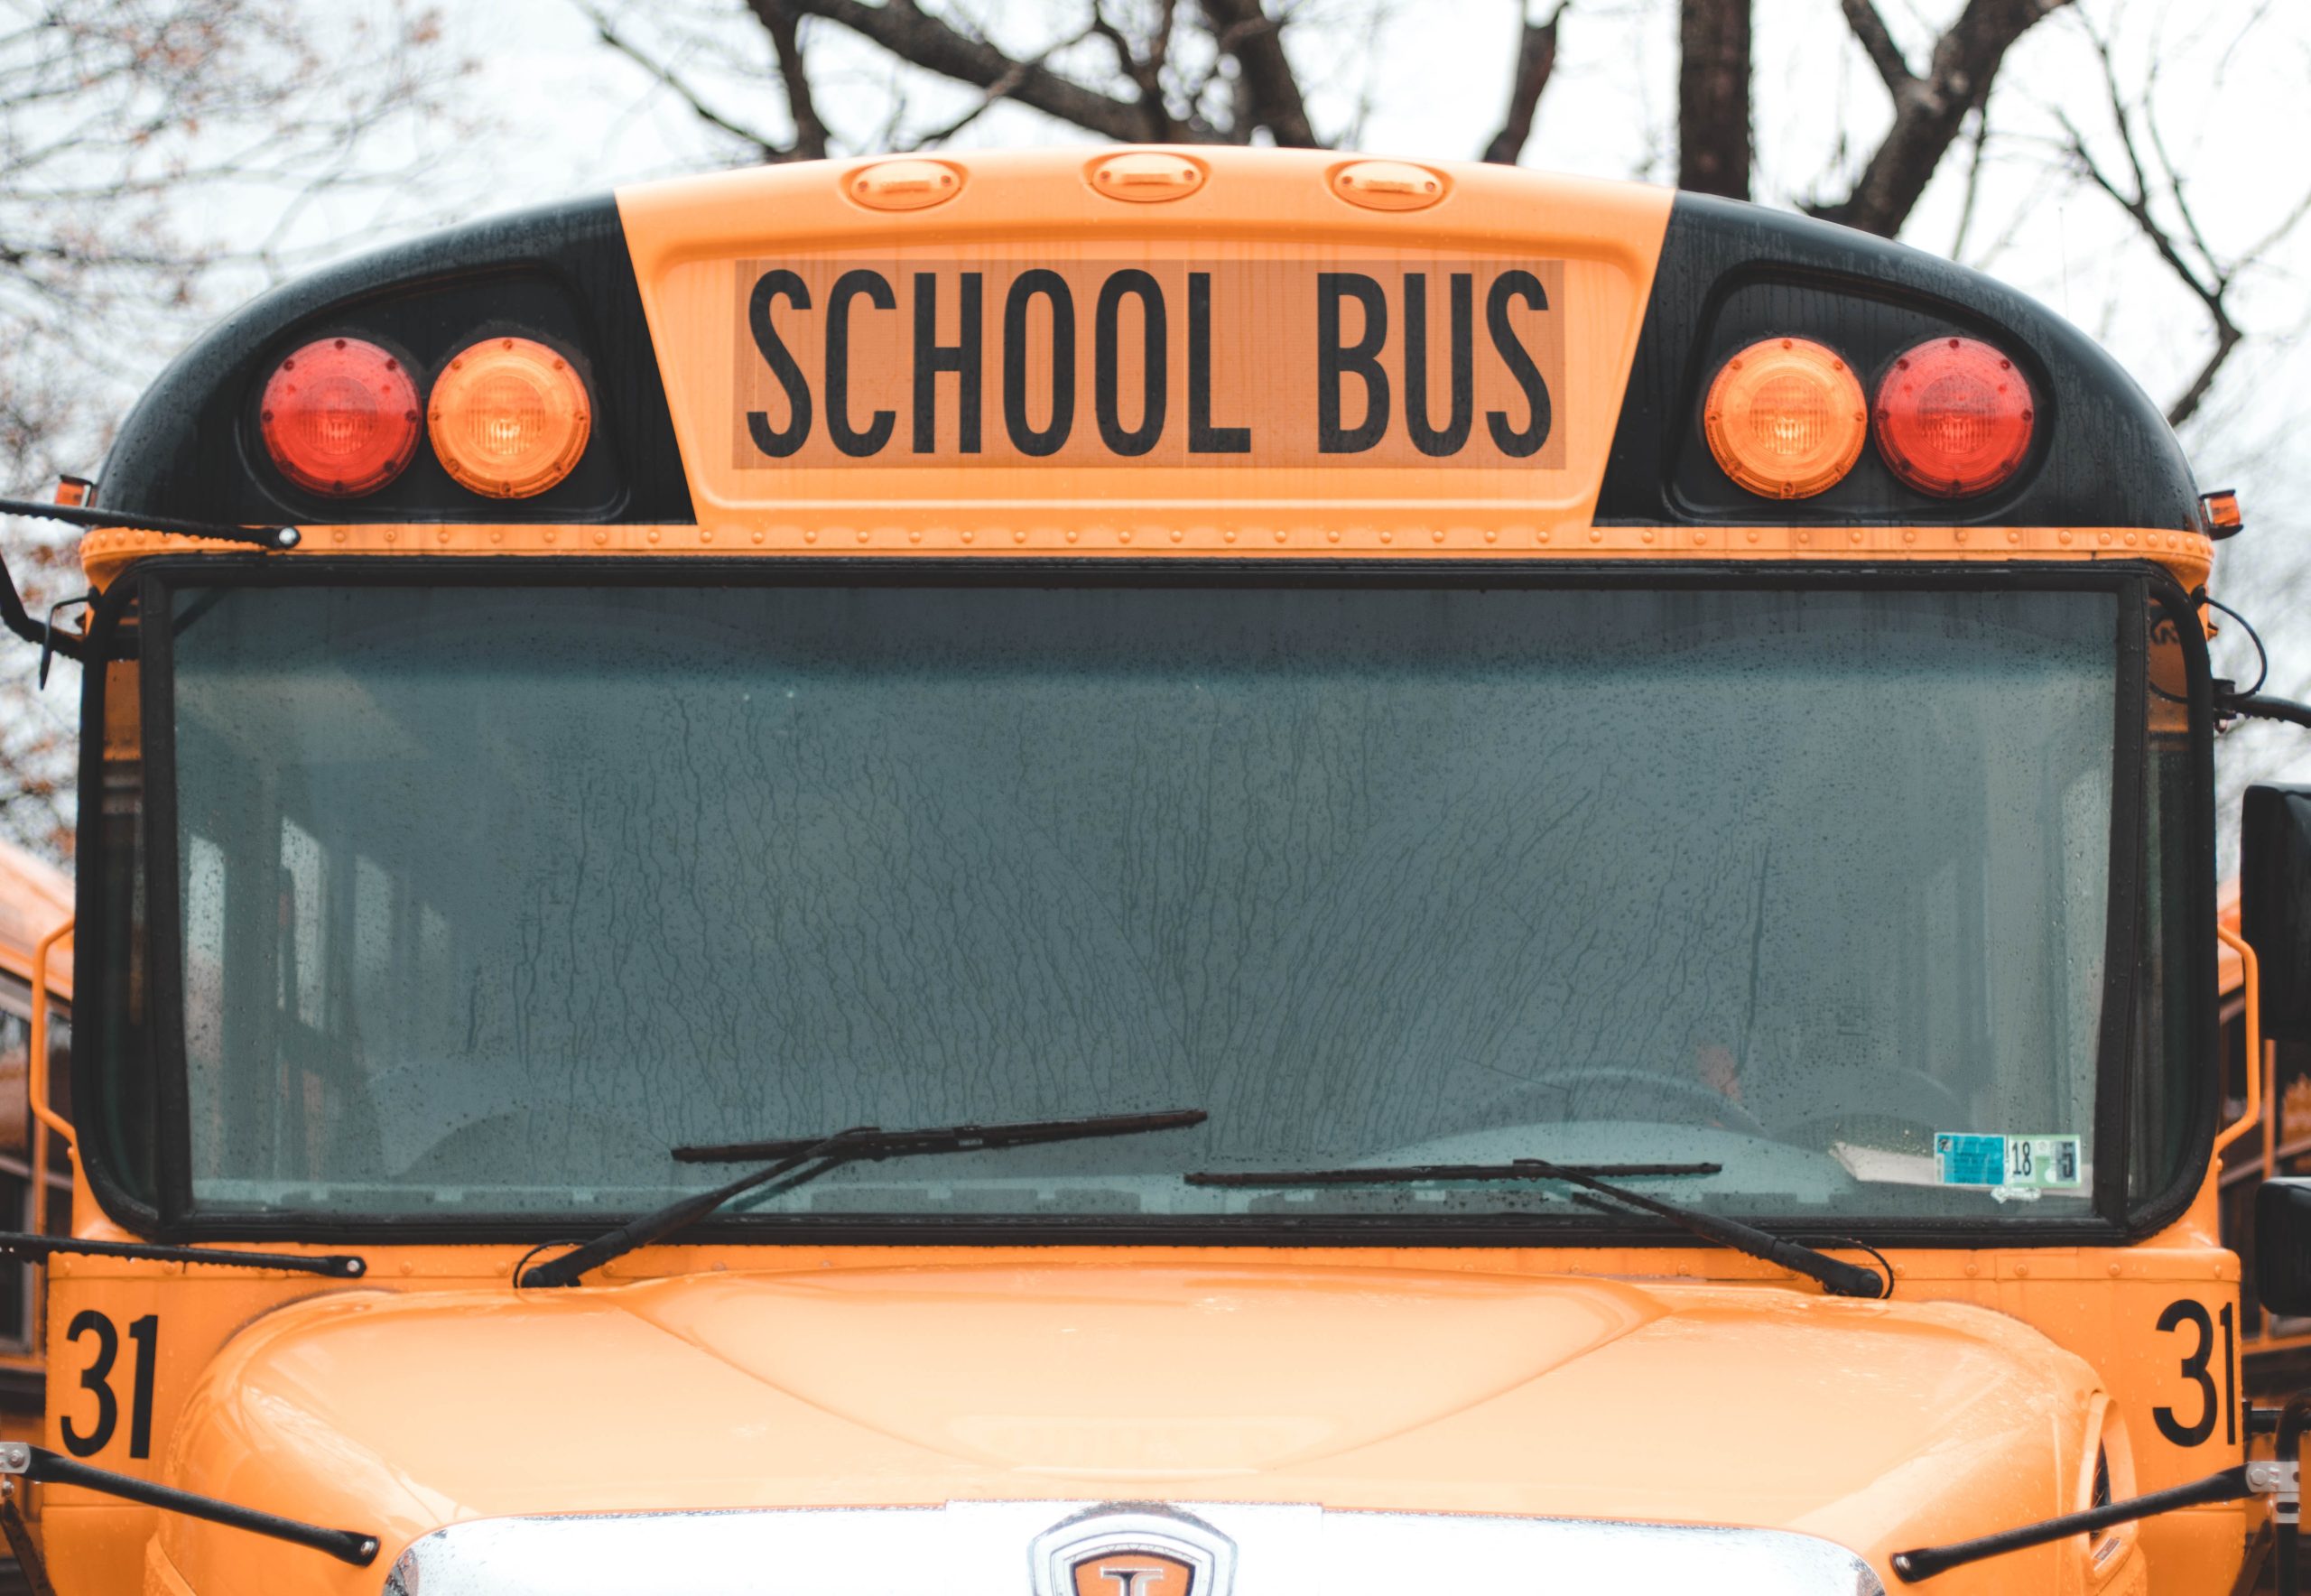 Teaching Children School Bus Safety